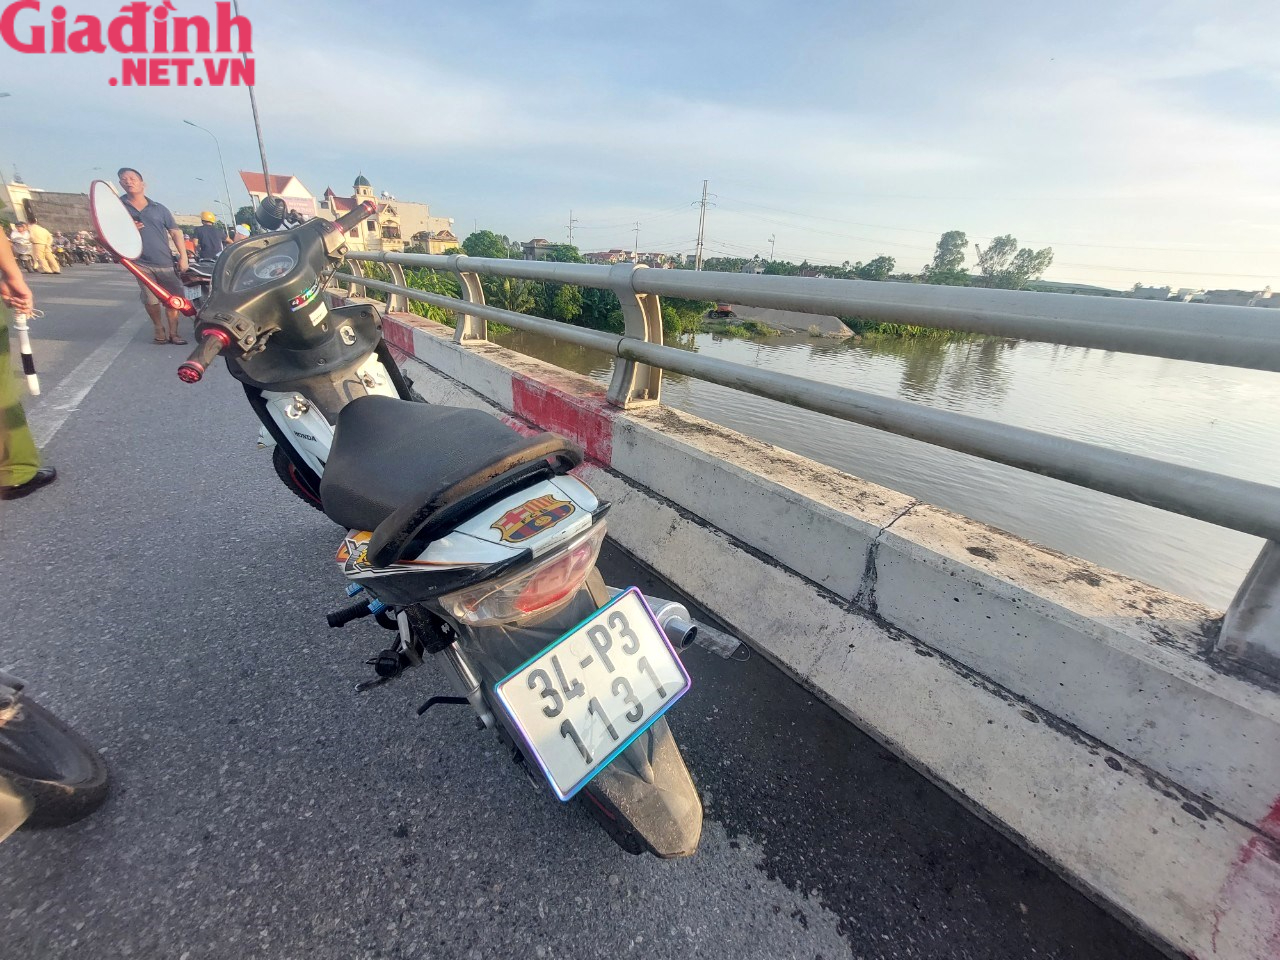 Hải Dương: Người đàn ông huyện Ninh Giang đi xe máy lên cầu Ràm bất ngờ nhảy xuống sông Cửu An - Ảnh 3.